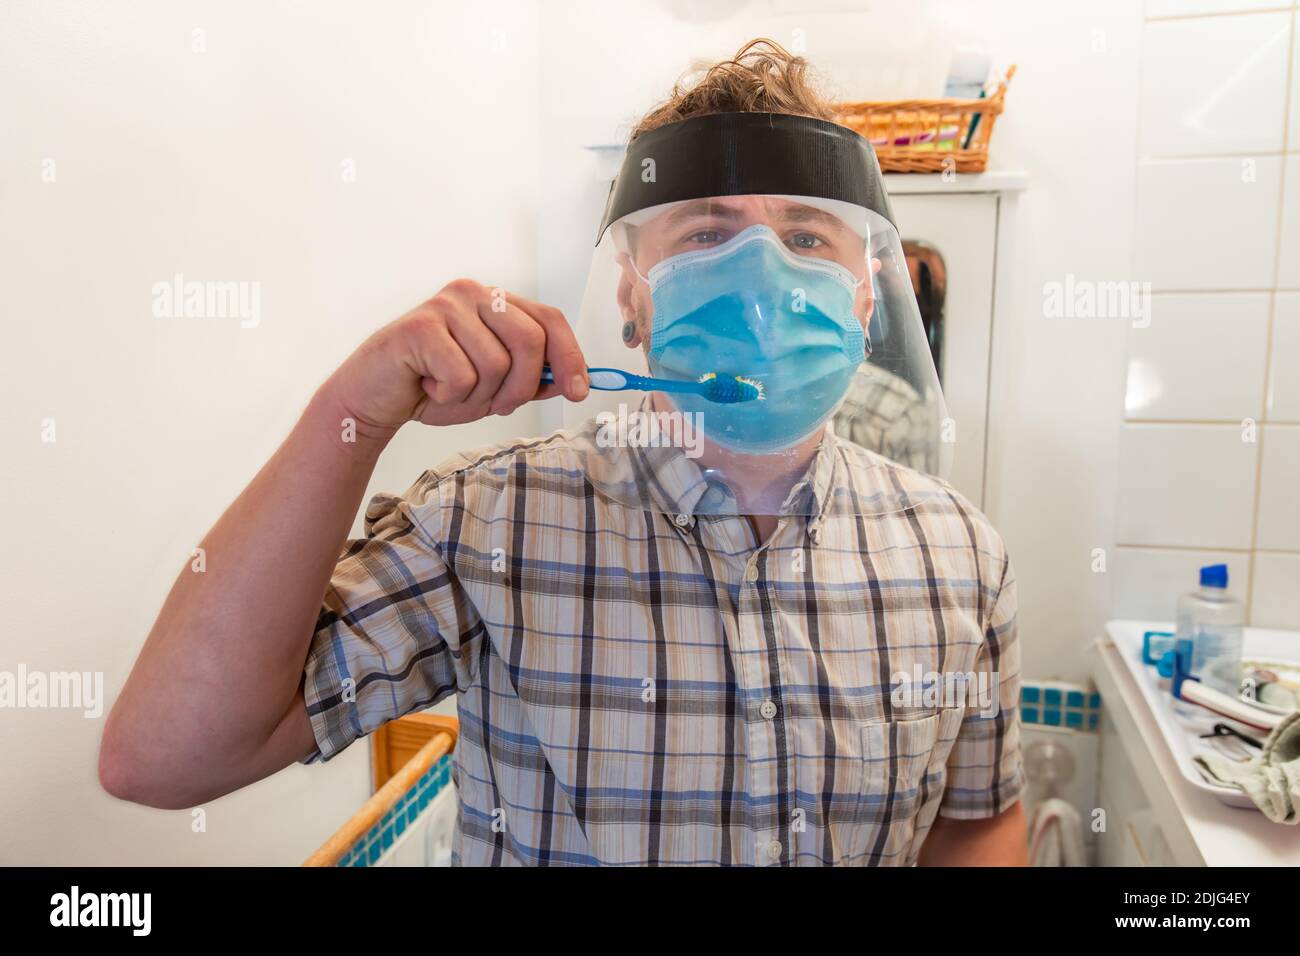 Lustige und ironische Aufnahme eines jungen Mannes in seinem Badezimmer, der versucht, seine Zähne mit und über einer covid Schutzmaske und Plastikvisier zu waschen. Stockfoto